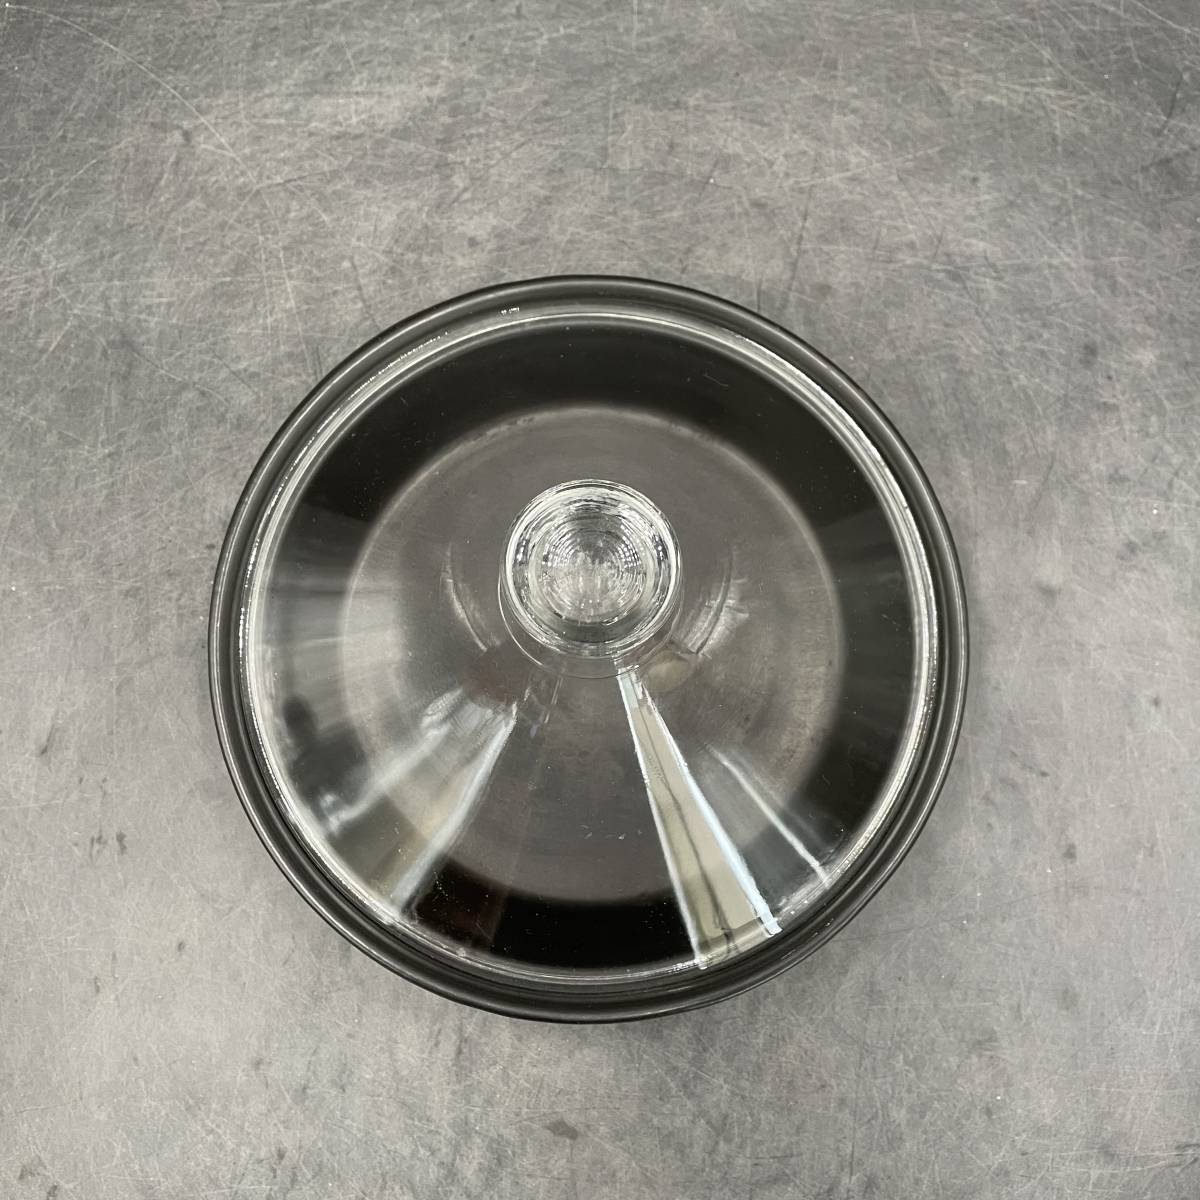  タジン鍋 ガラス蓋 内径20cm 調理 器具 キッチン の画像6